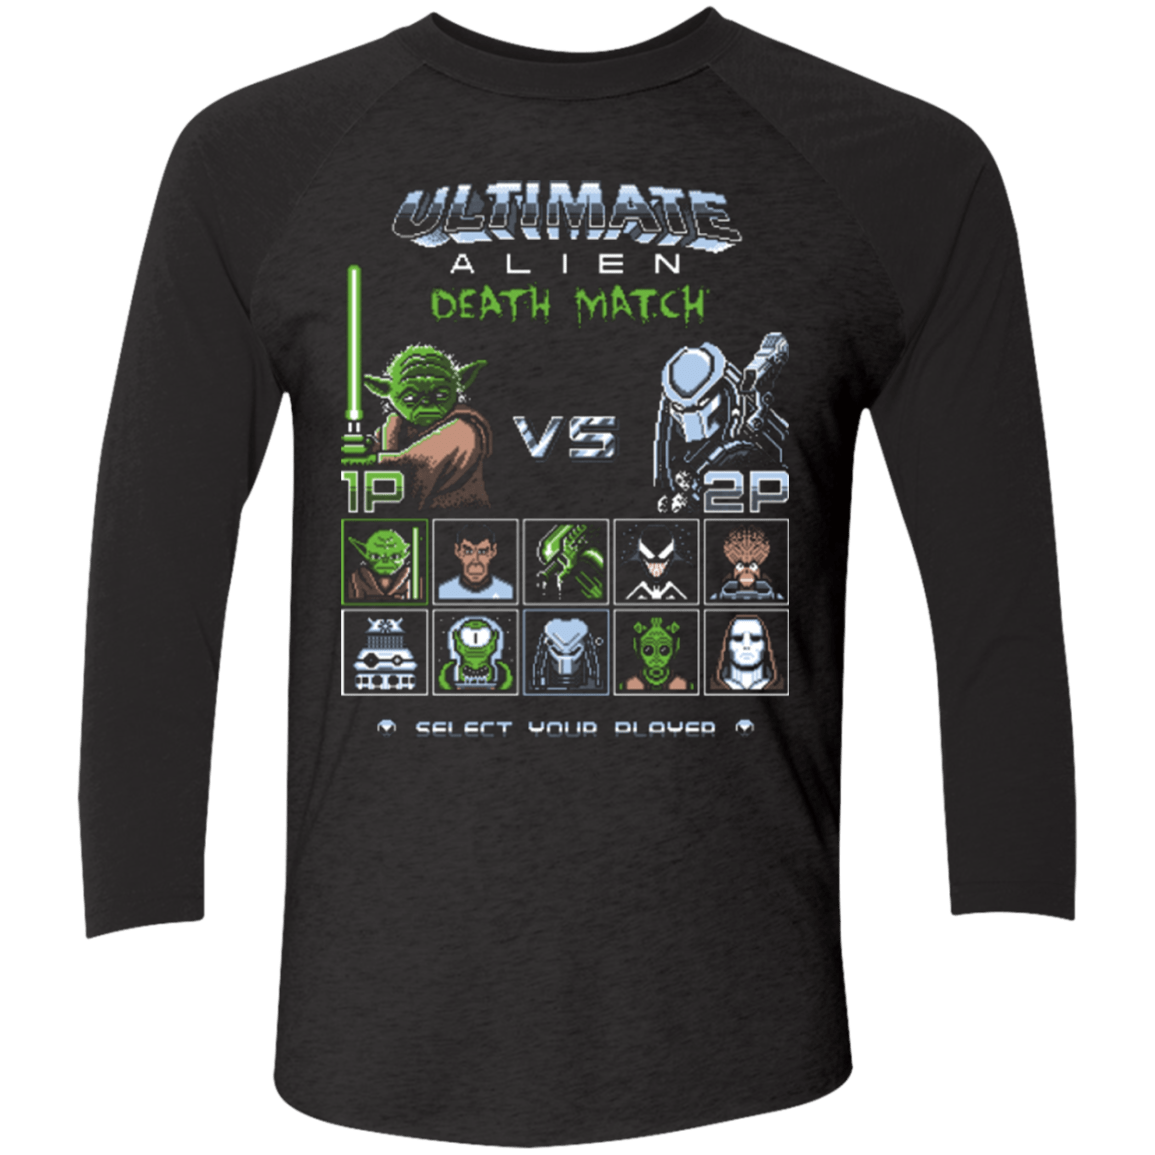 T-Shirts Vintage Black/Vintage Black / X-Small Ultimate alien deathmatch Men's Triblend 3/4 Sleeve